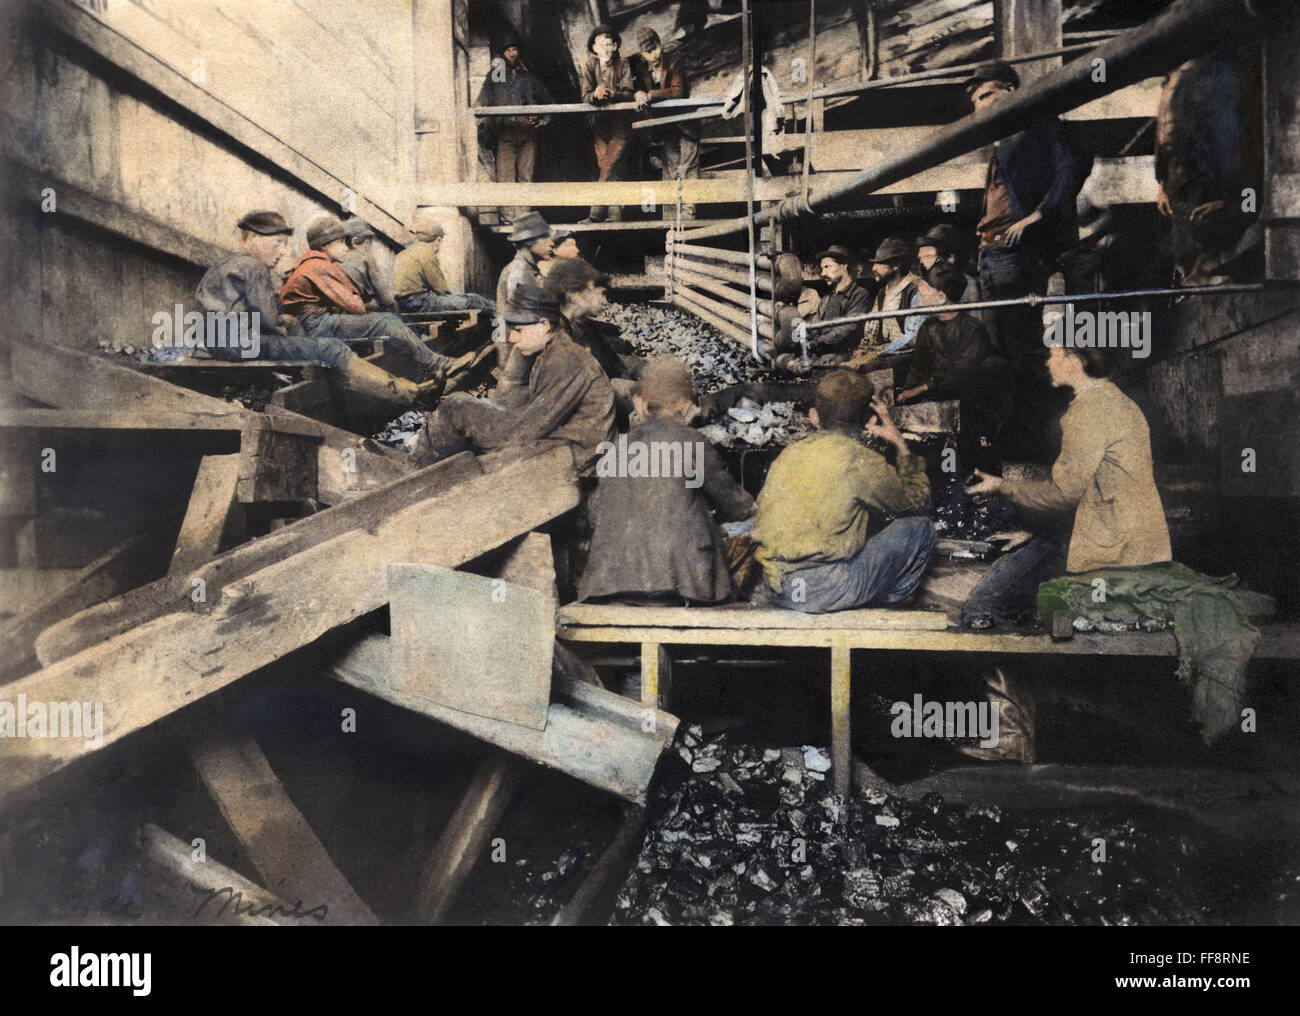 Le travail des enfants, 1913. /NBoys ardoise cueillette dans un grand marteau du charbon dans une mine d'anthracite. Huile à une photographie de Lewis W. Hine, c1913. Banque D'Images